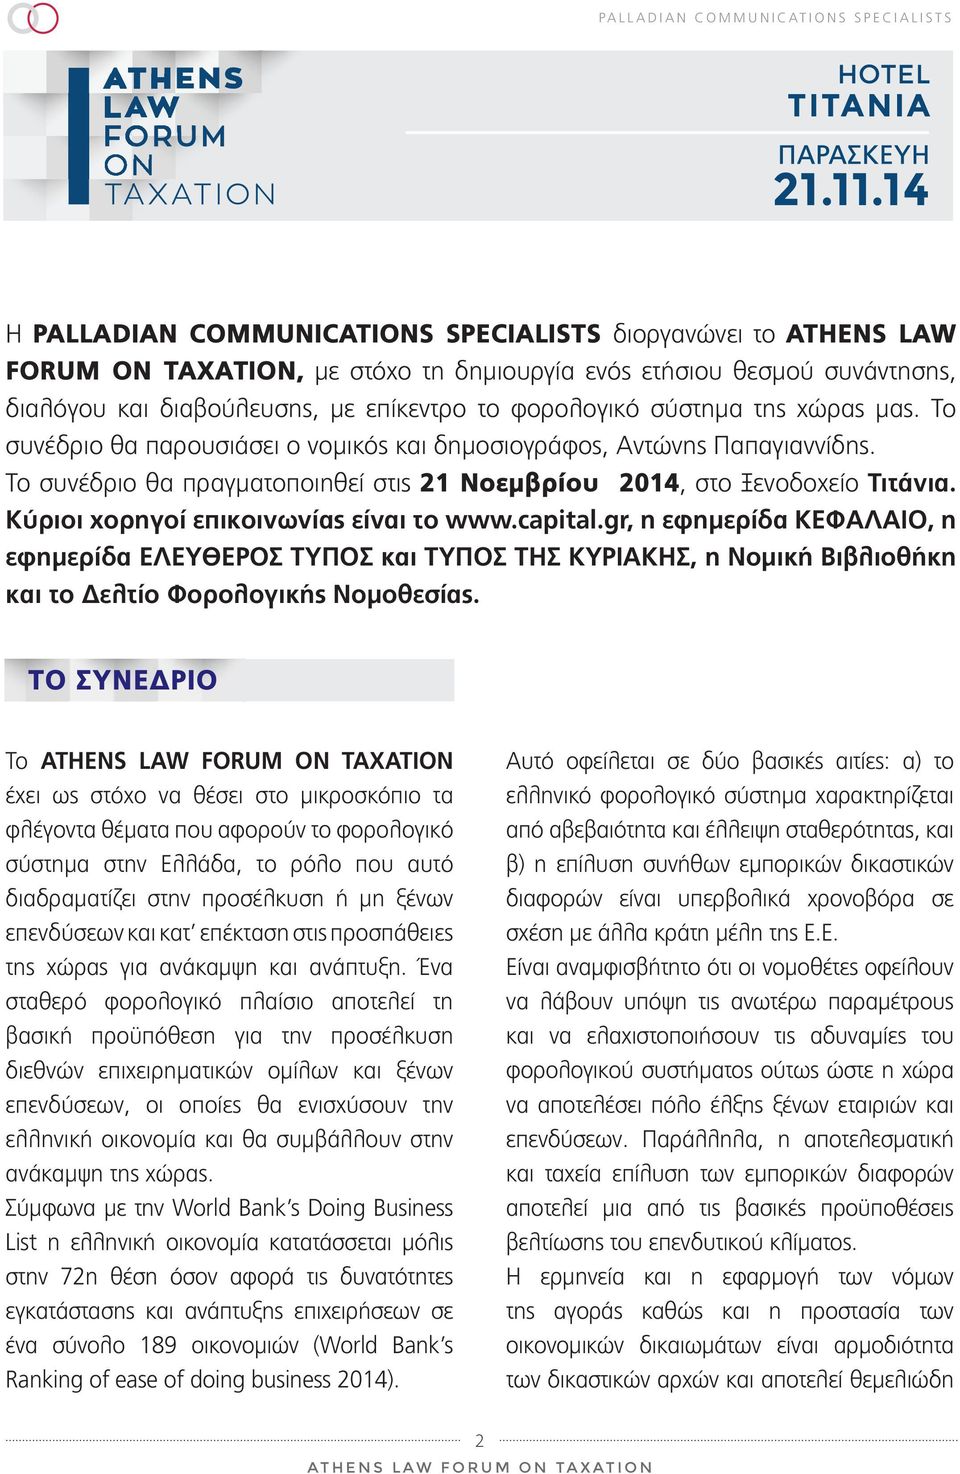 Κύριοι χορηγοί επικοινωνίας είναι το www.capital.gr, η εφημερίδα ΚΕΦΑΛΑΙΟ, η εφημερίδα ΕΛΕΥΘΕΡΟΣ ΤΥΠΟΣ και ΤΥΠΟΣ ΤΗΣ ΚΥΡΙΑΚΗΣ, η Νομική Βιβλιοθήκη και το Δελτίο Φορολογικής Νομοθεσίας.